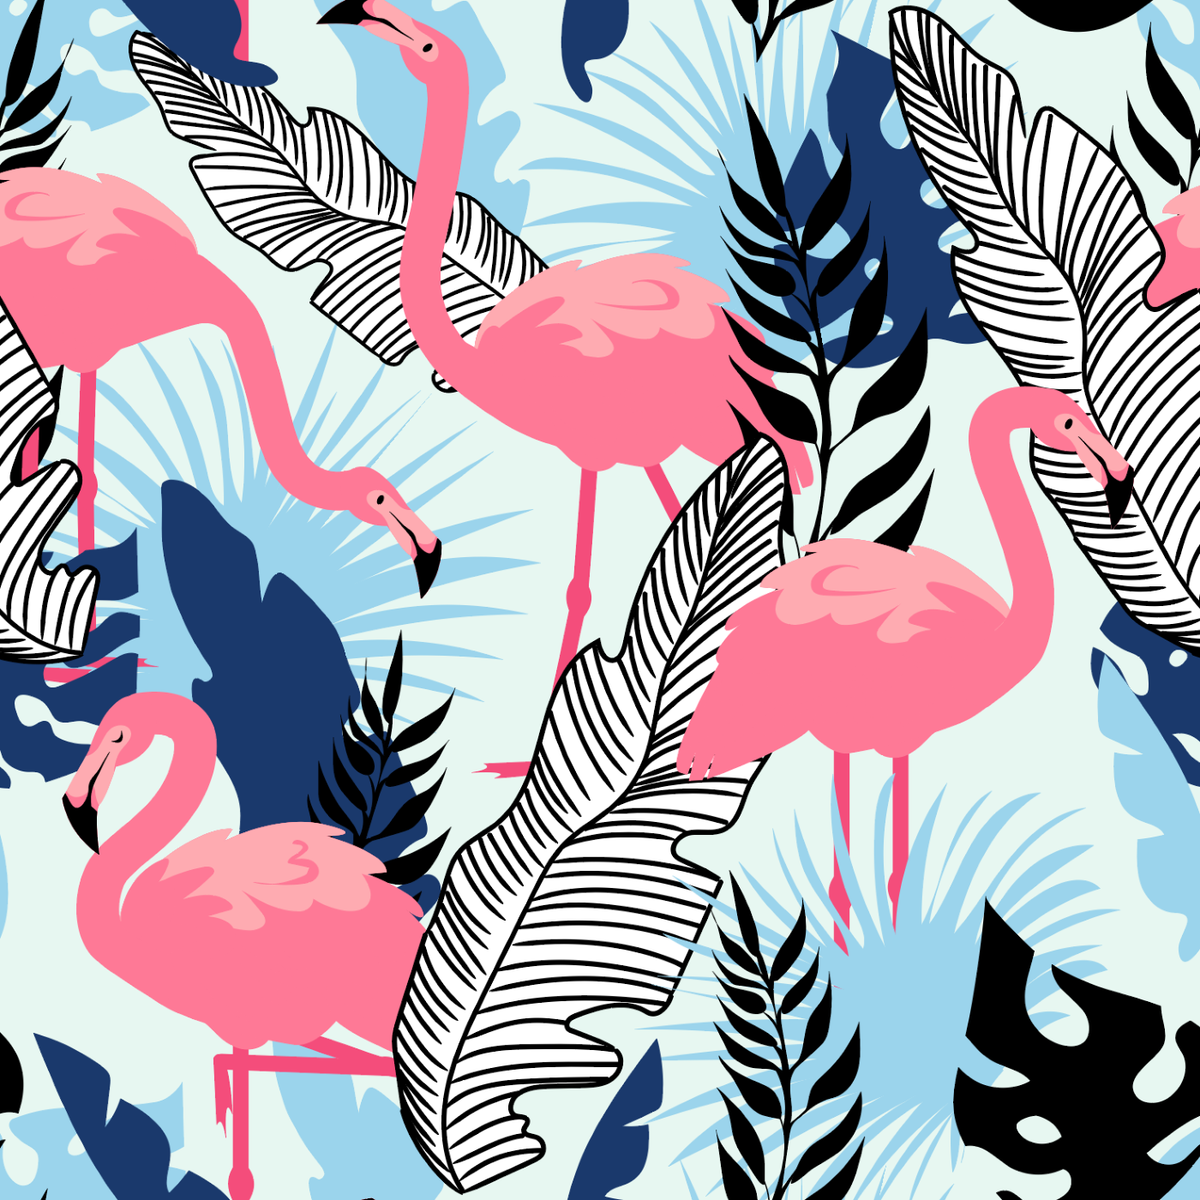 Flamingo Party - 808 Wall Art